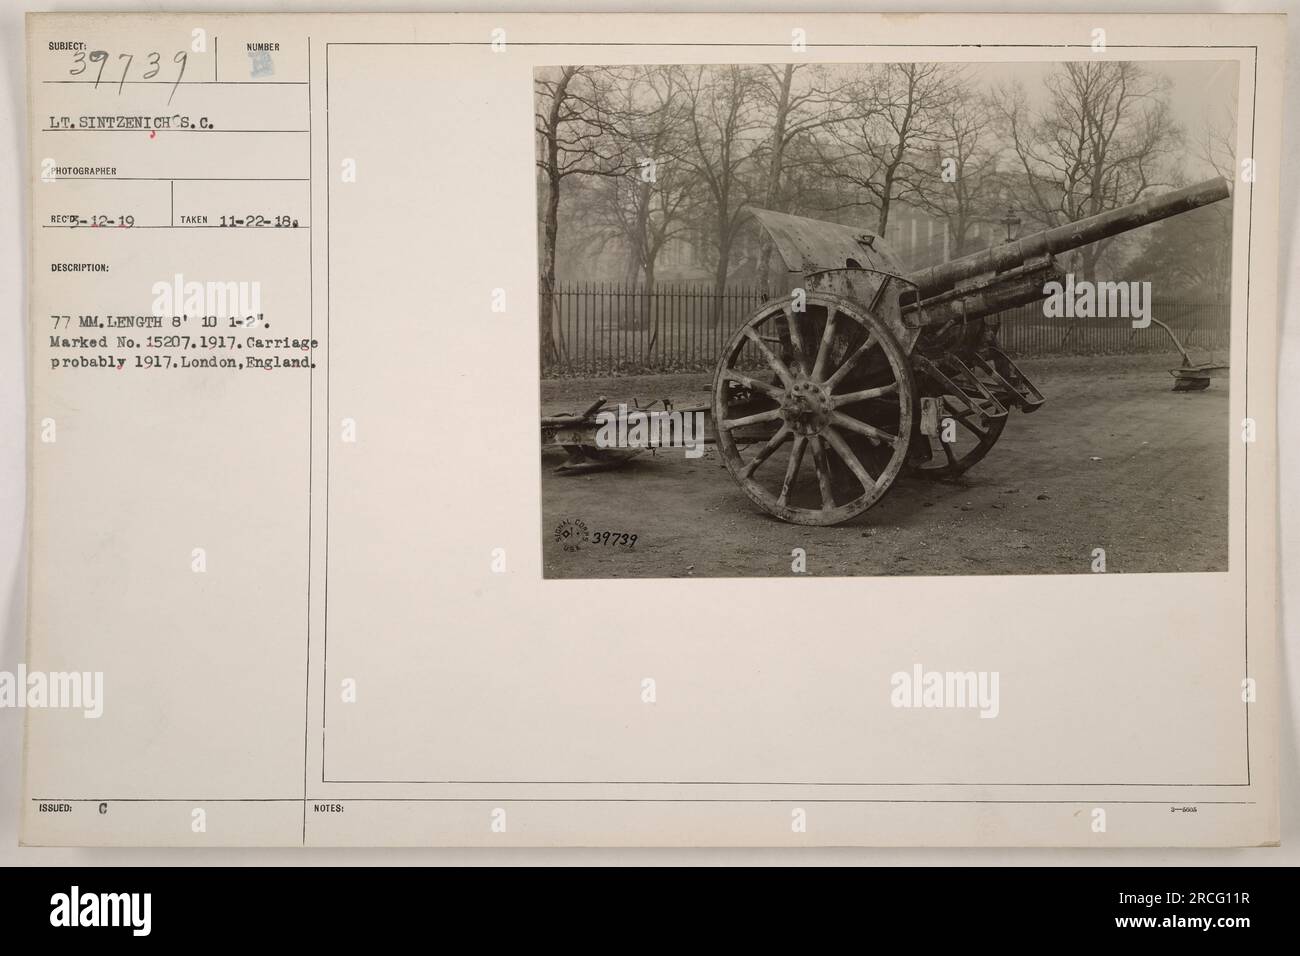 Il tenente Sintzenich, un fotografo americano, ha catturato questa immagine durante la prima guerra mondiale. La fotografia raffigura un cannone di artiglieria da 77 mm con una lunghezza di 8 10 1-2 pollici. Il cannone è contrassegnato con il numero 15207 ed è stato probabilmente prodotto nel 1917. La posizione è Londra, Inghilterra. Foto Stock